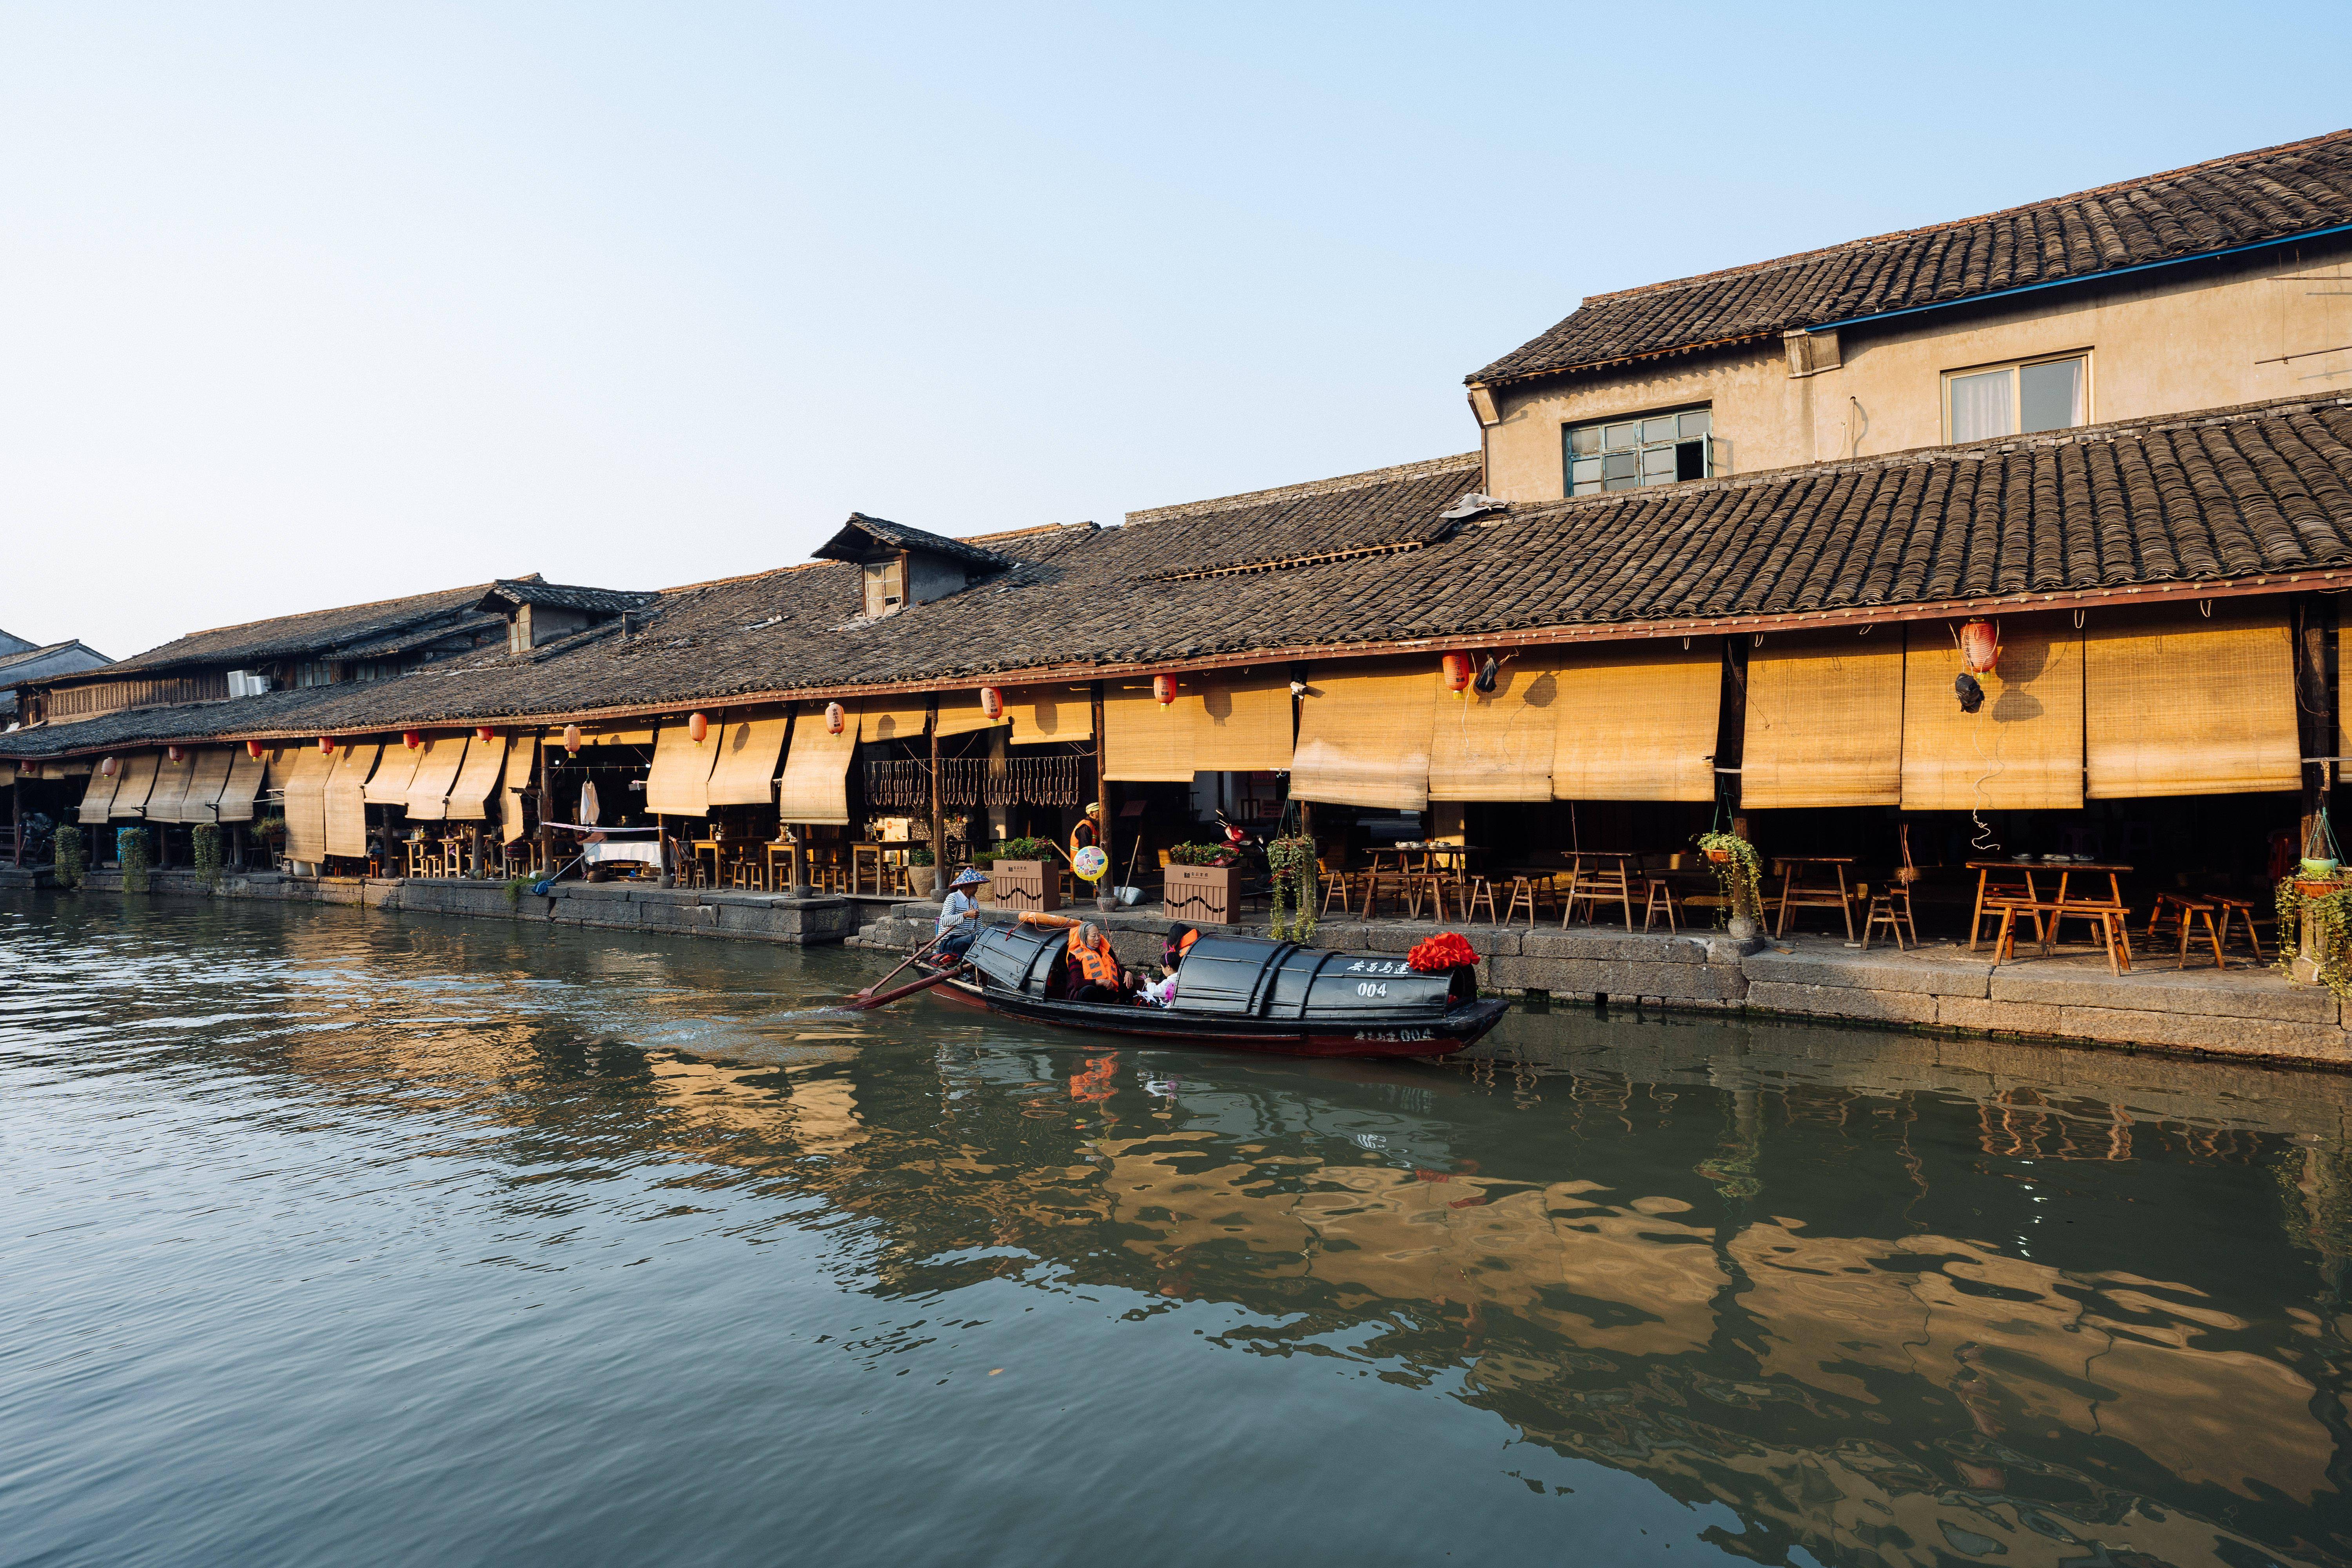 安昌古镇作为绍兴有名的四大古镇之一,其建筑风格传承了典型的江南